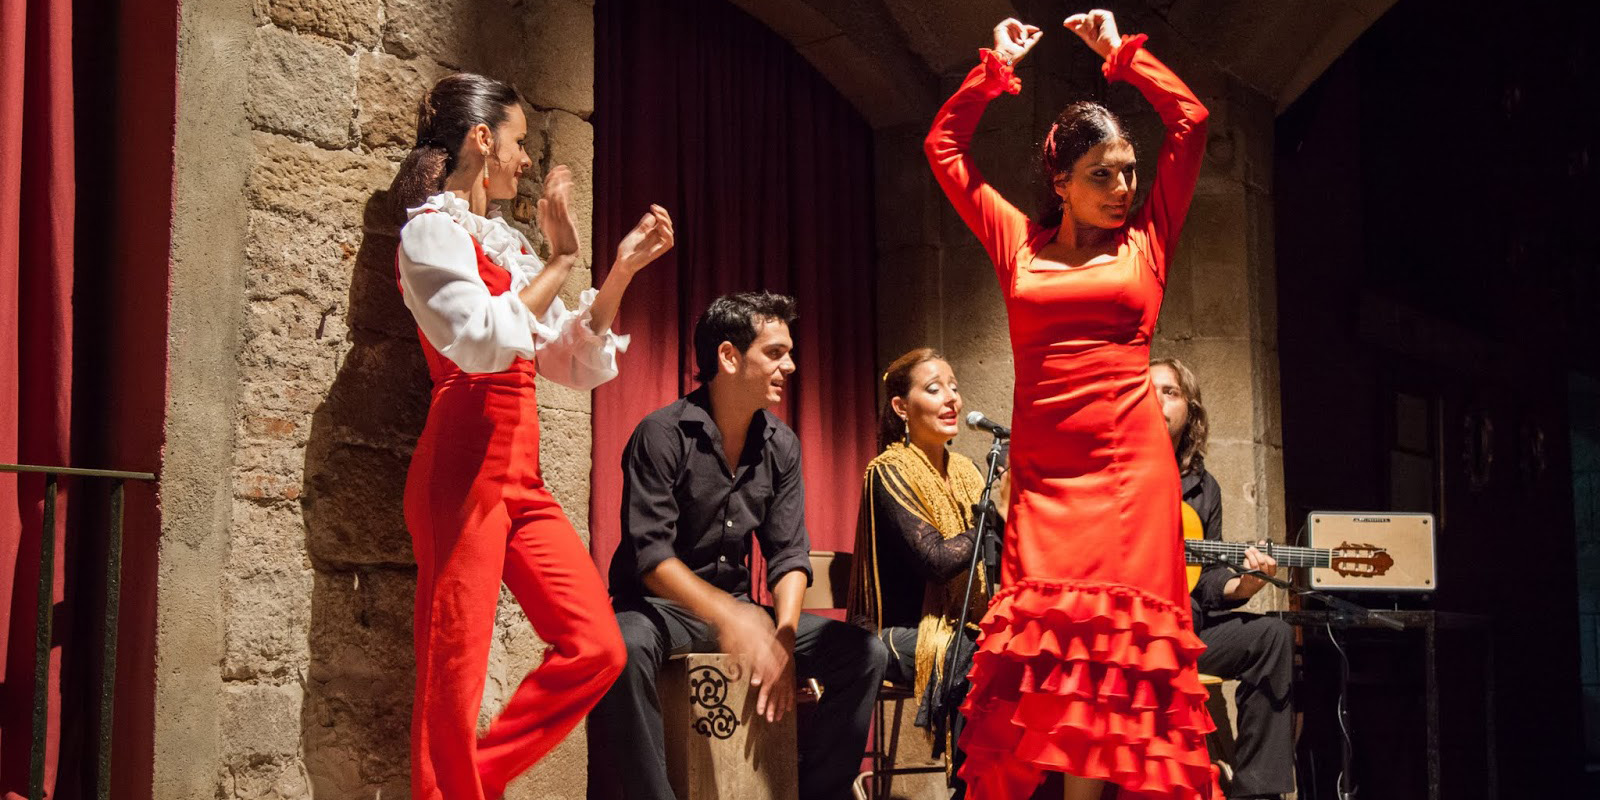 Испанское искусство танца и пения. Что такое фламенко?